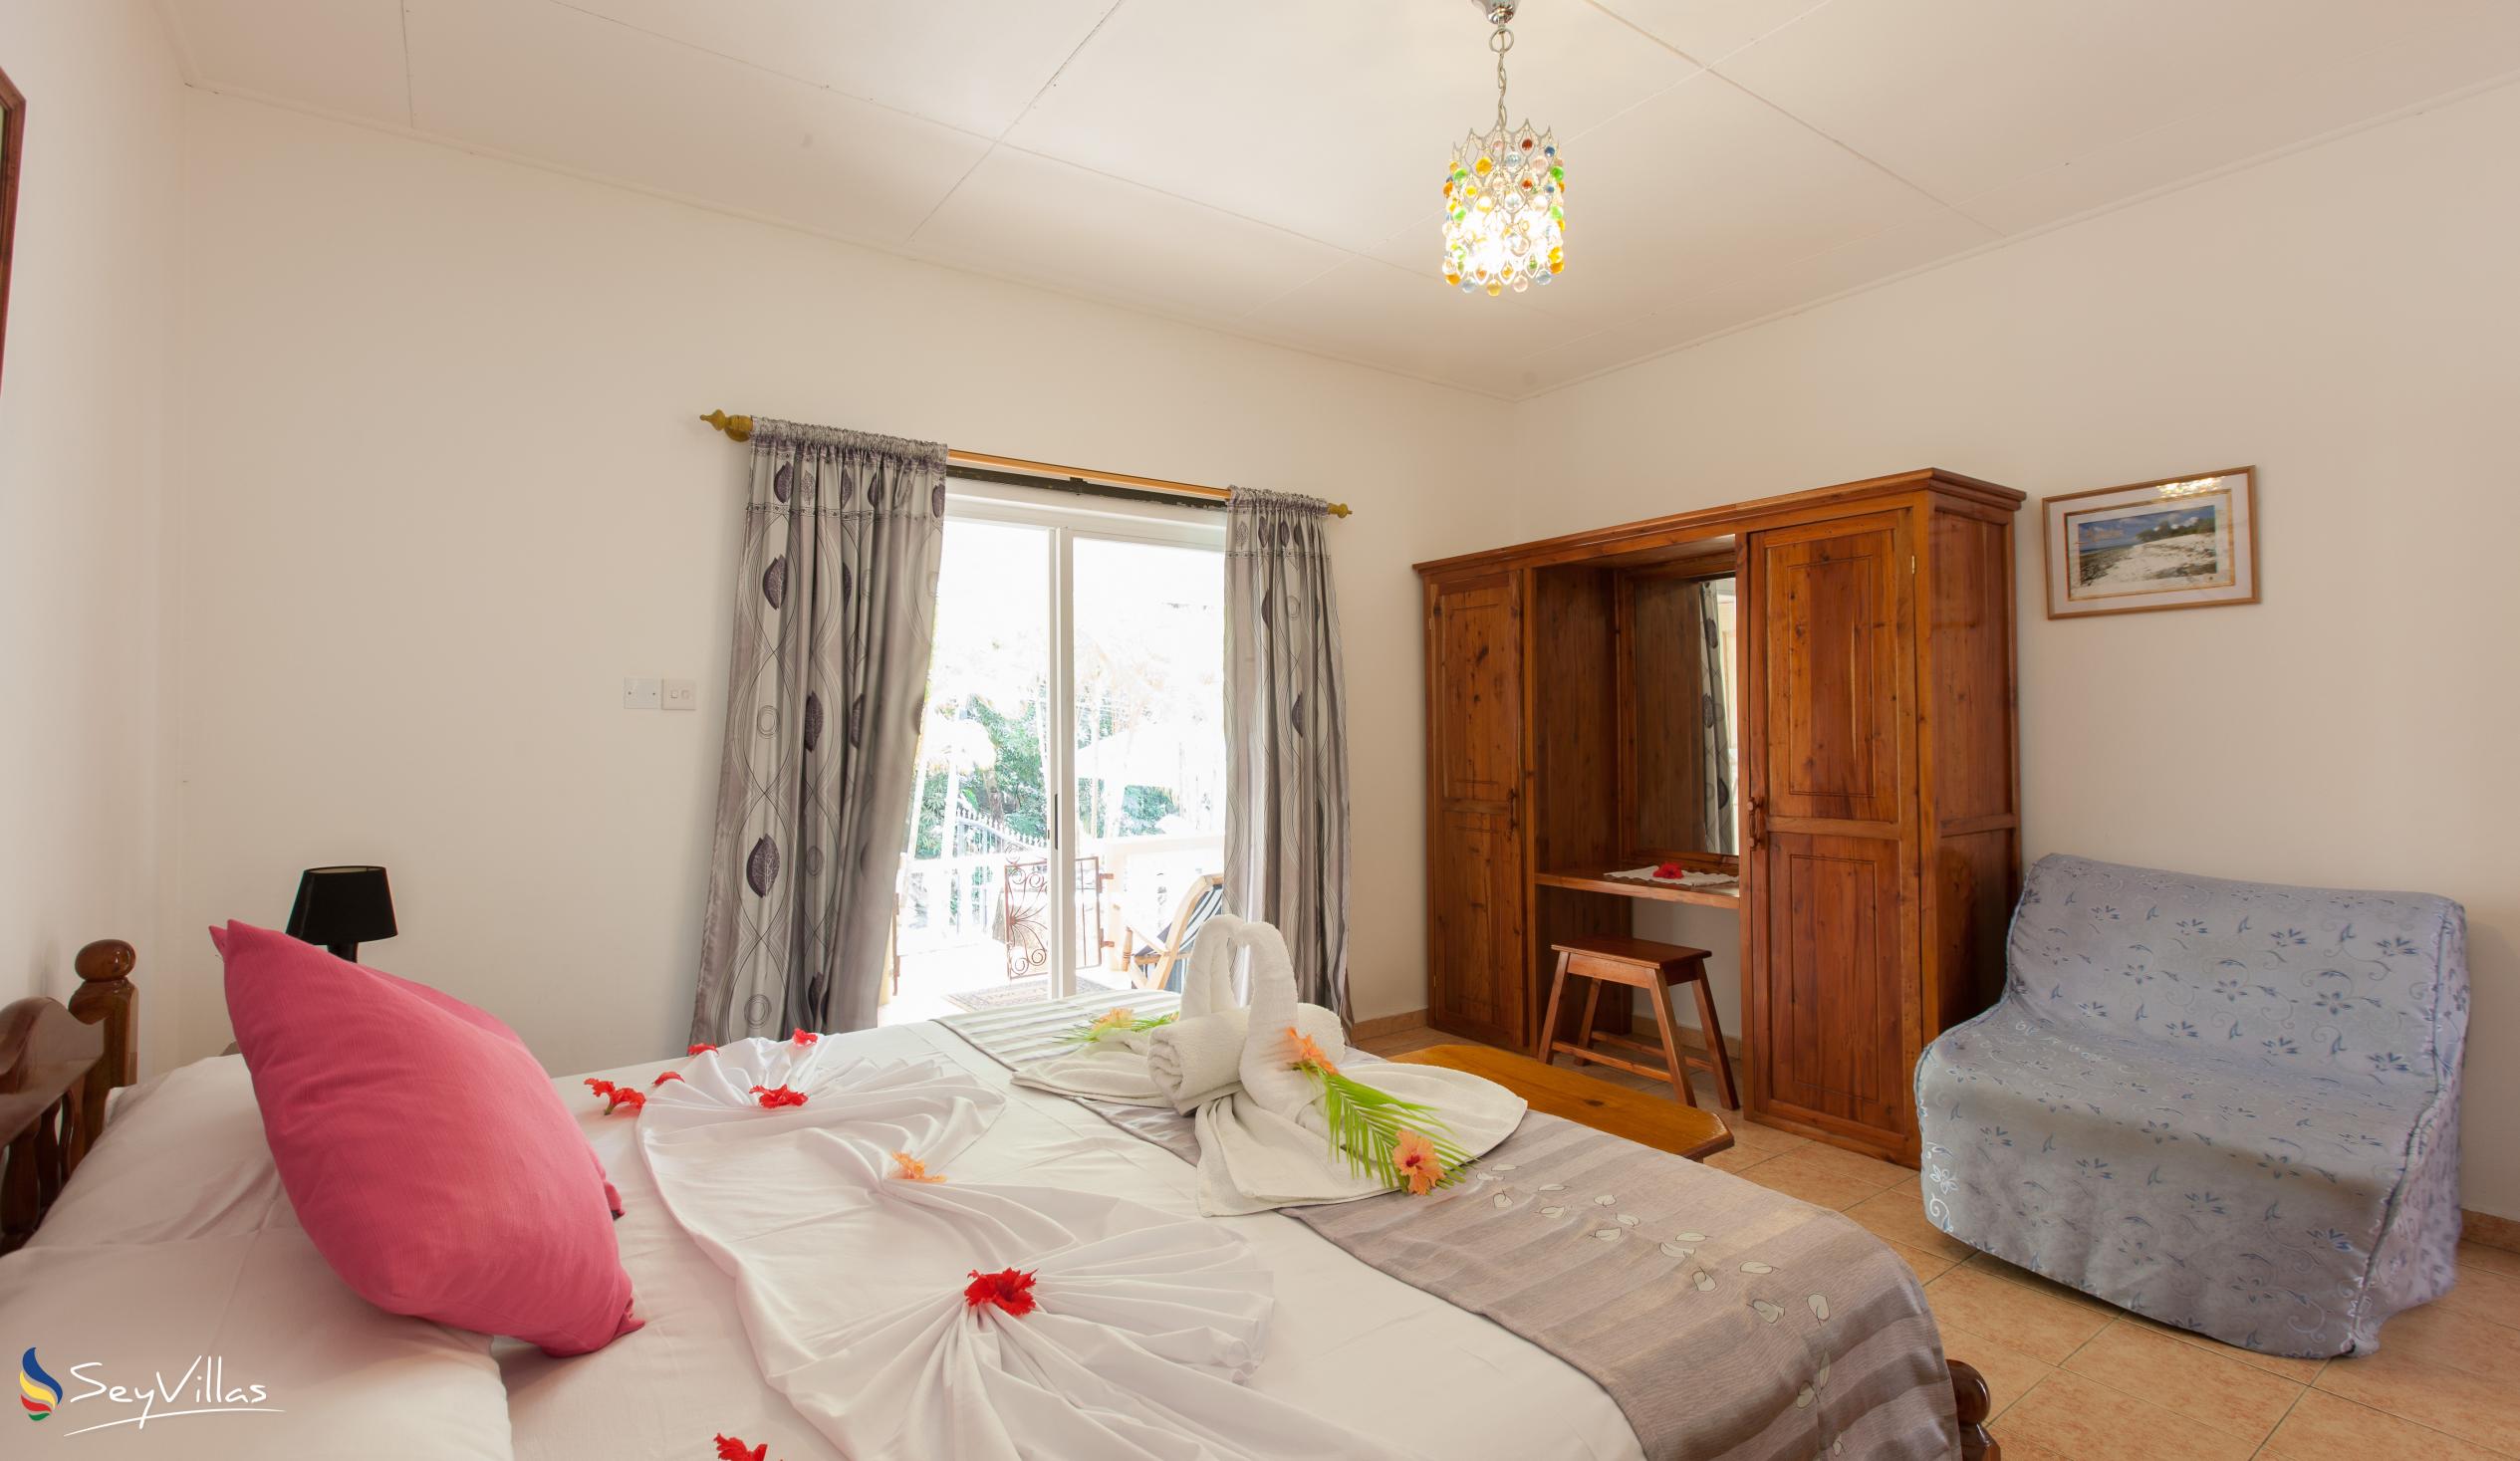 Photo 61: Acquario Villa - 1-Bedroom Apartment - Praslin (Seychelles)